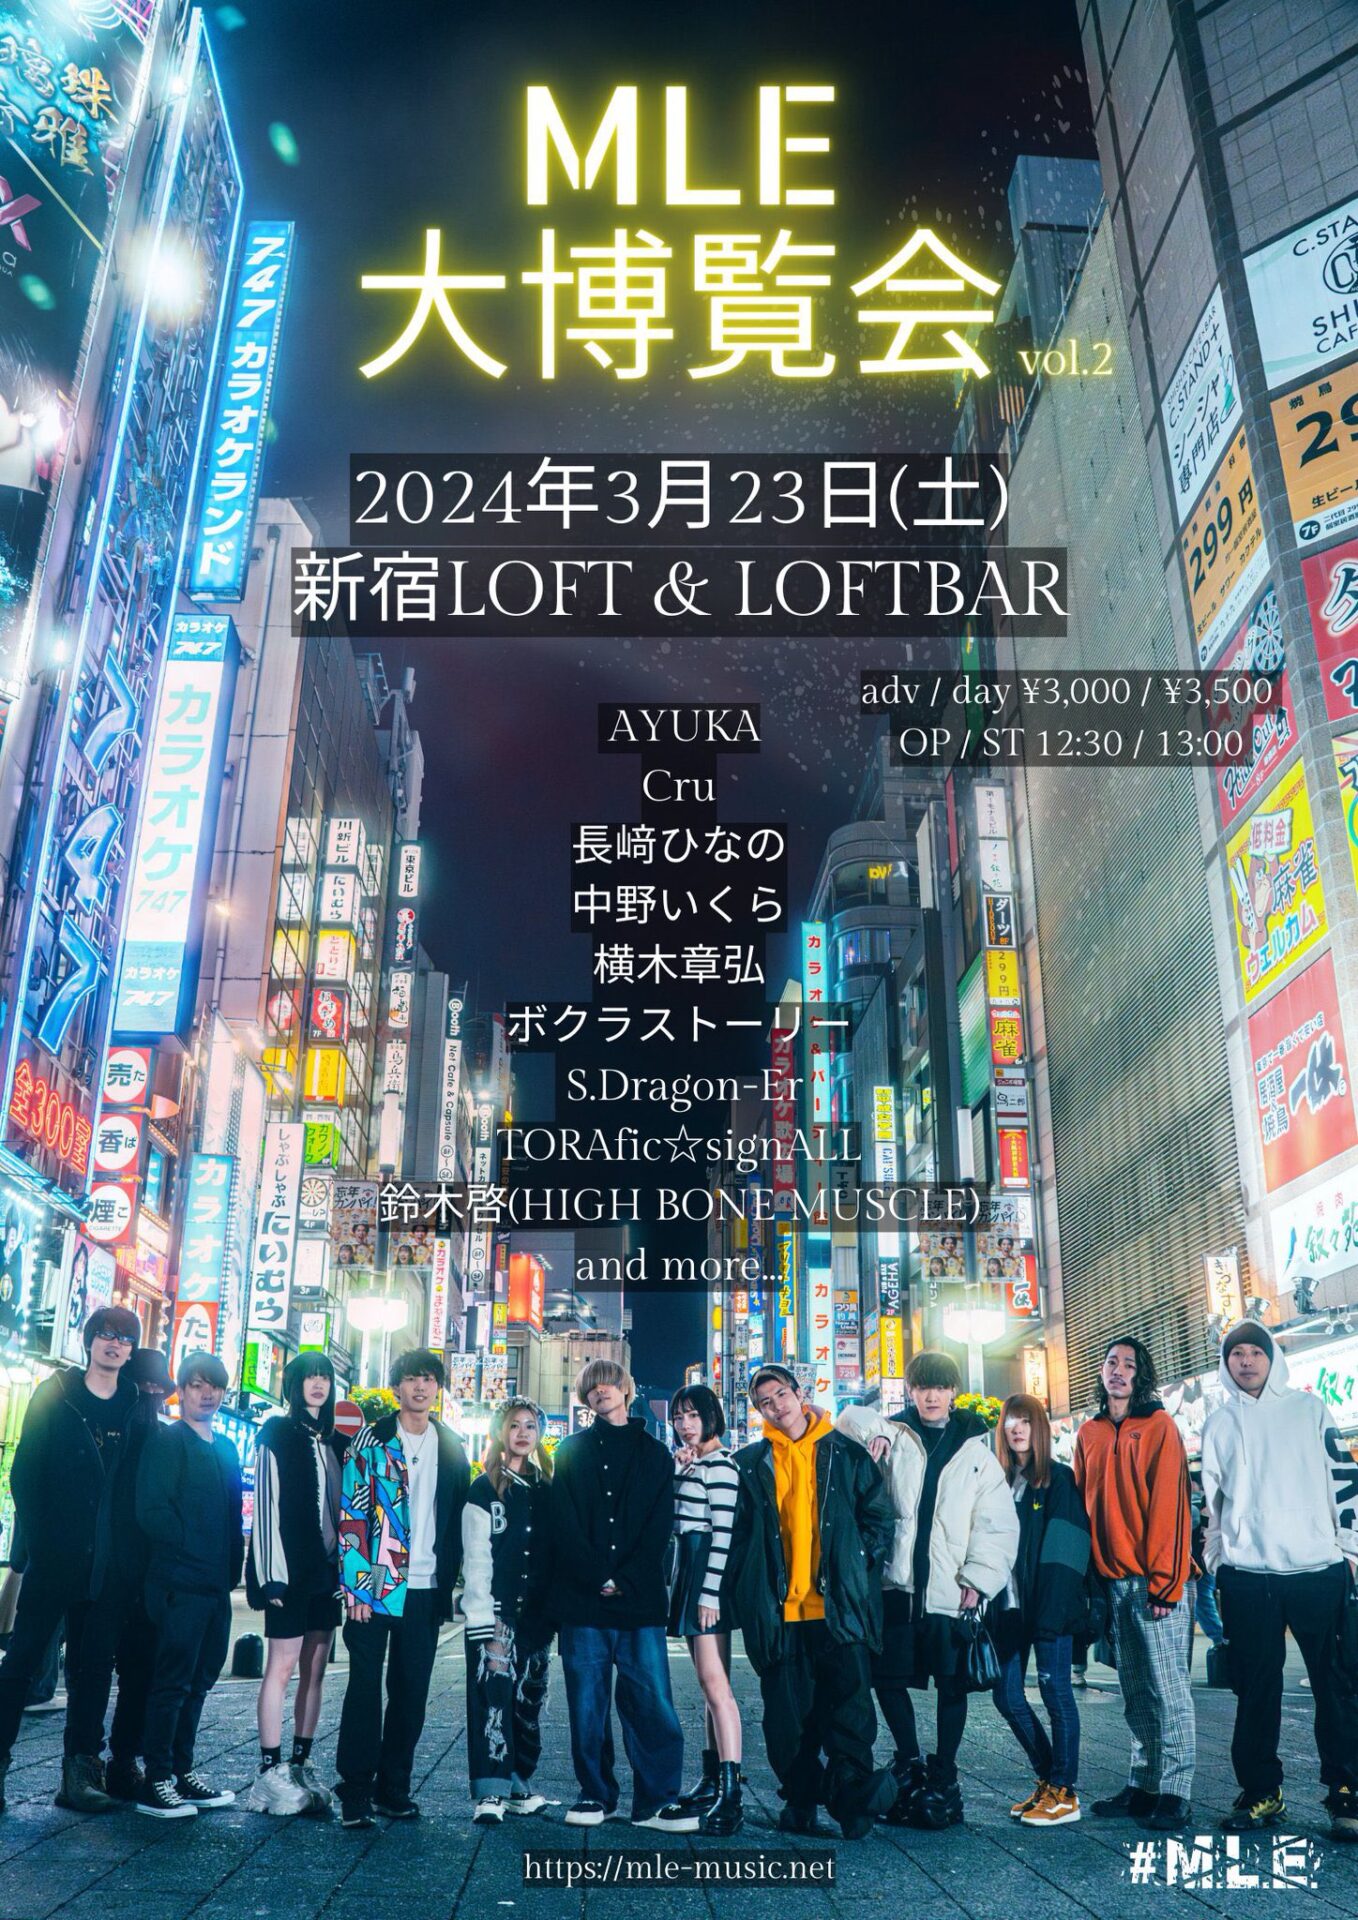 3月23日(土)新宿LOFT&LOFTBAR MLE Music presents 【MLE大博覧会 vol.2】